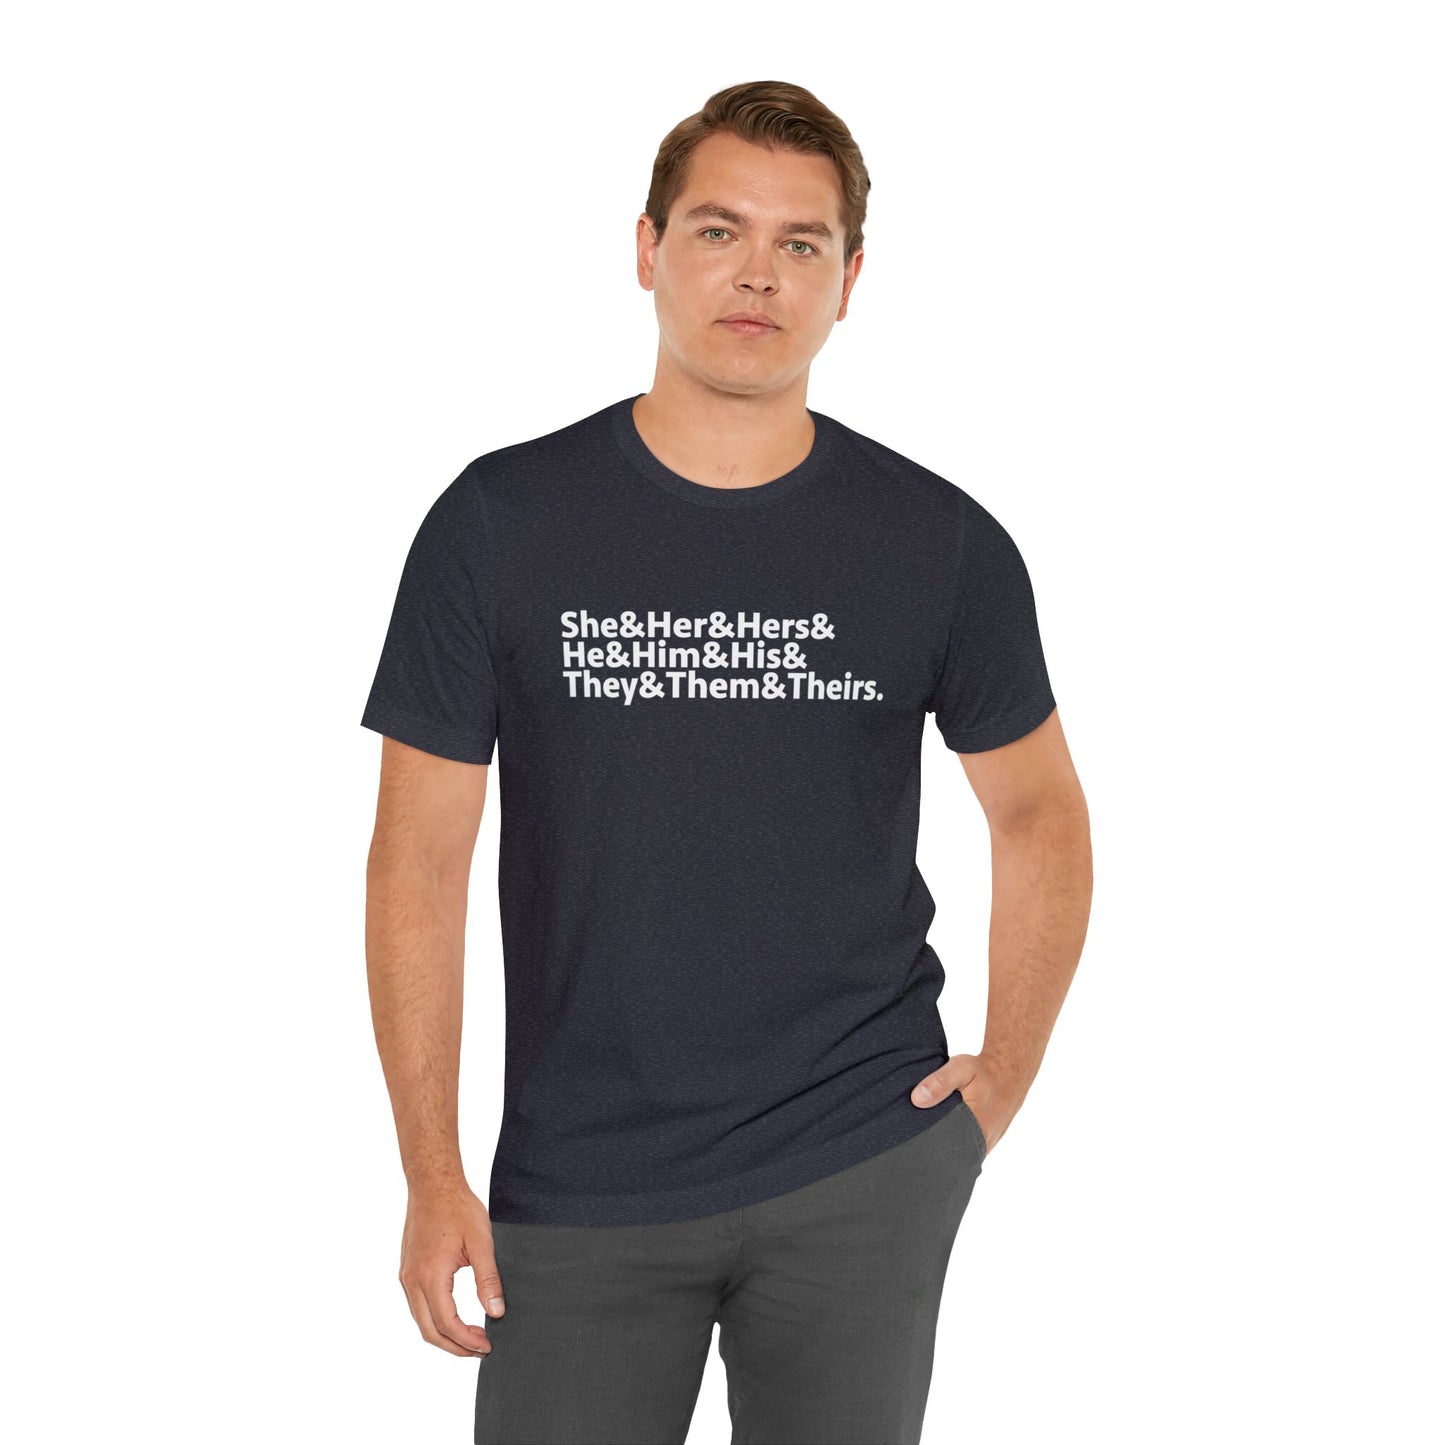 Express Yourself Pronoun T-Shirt